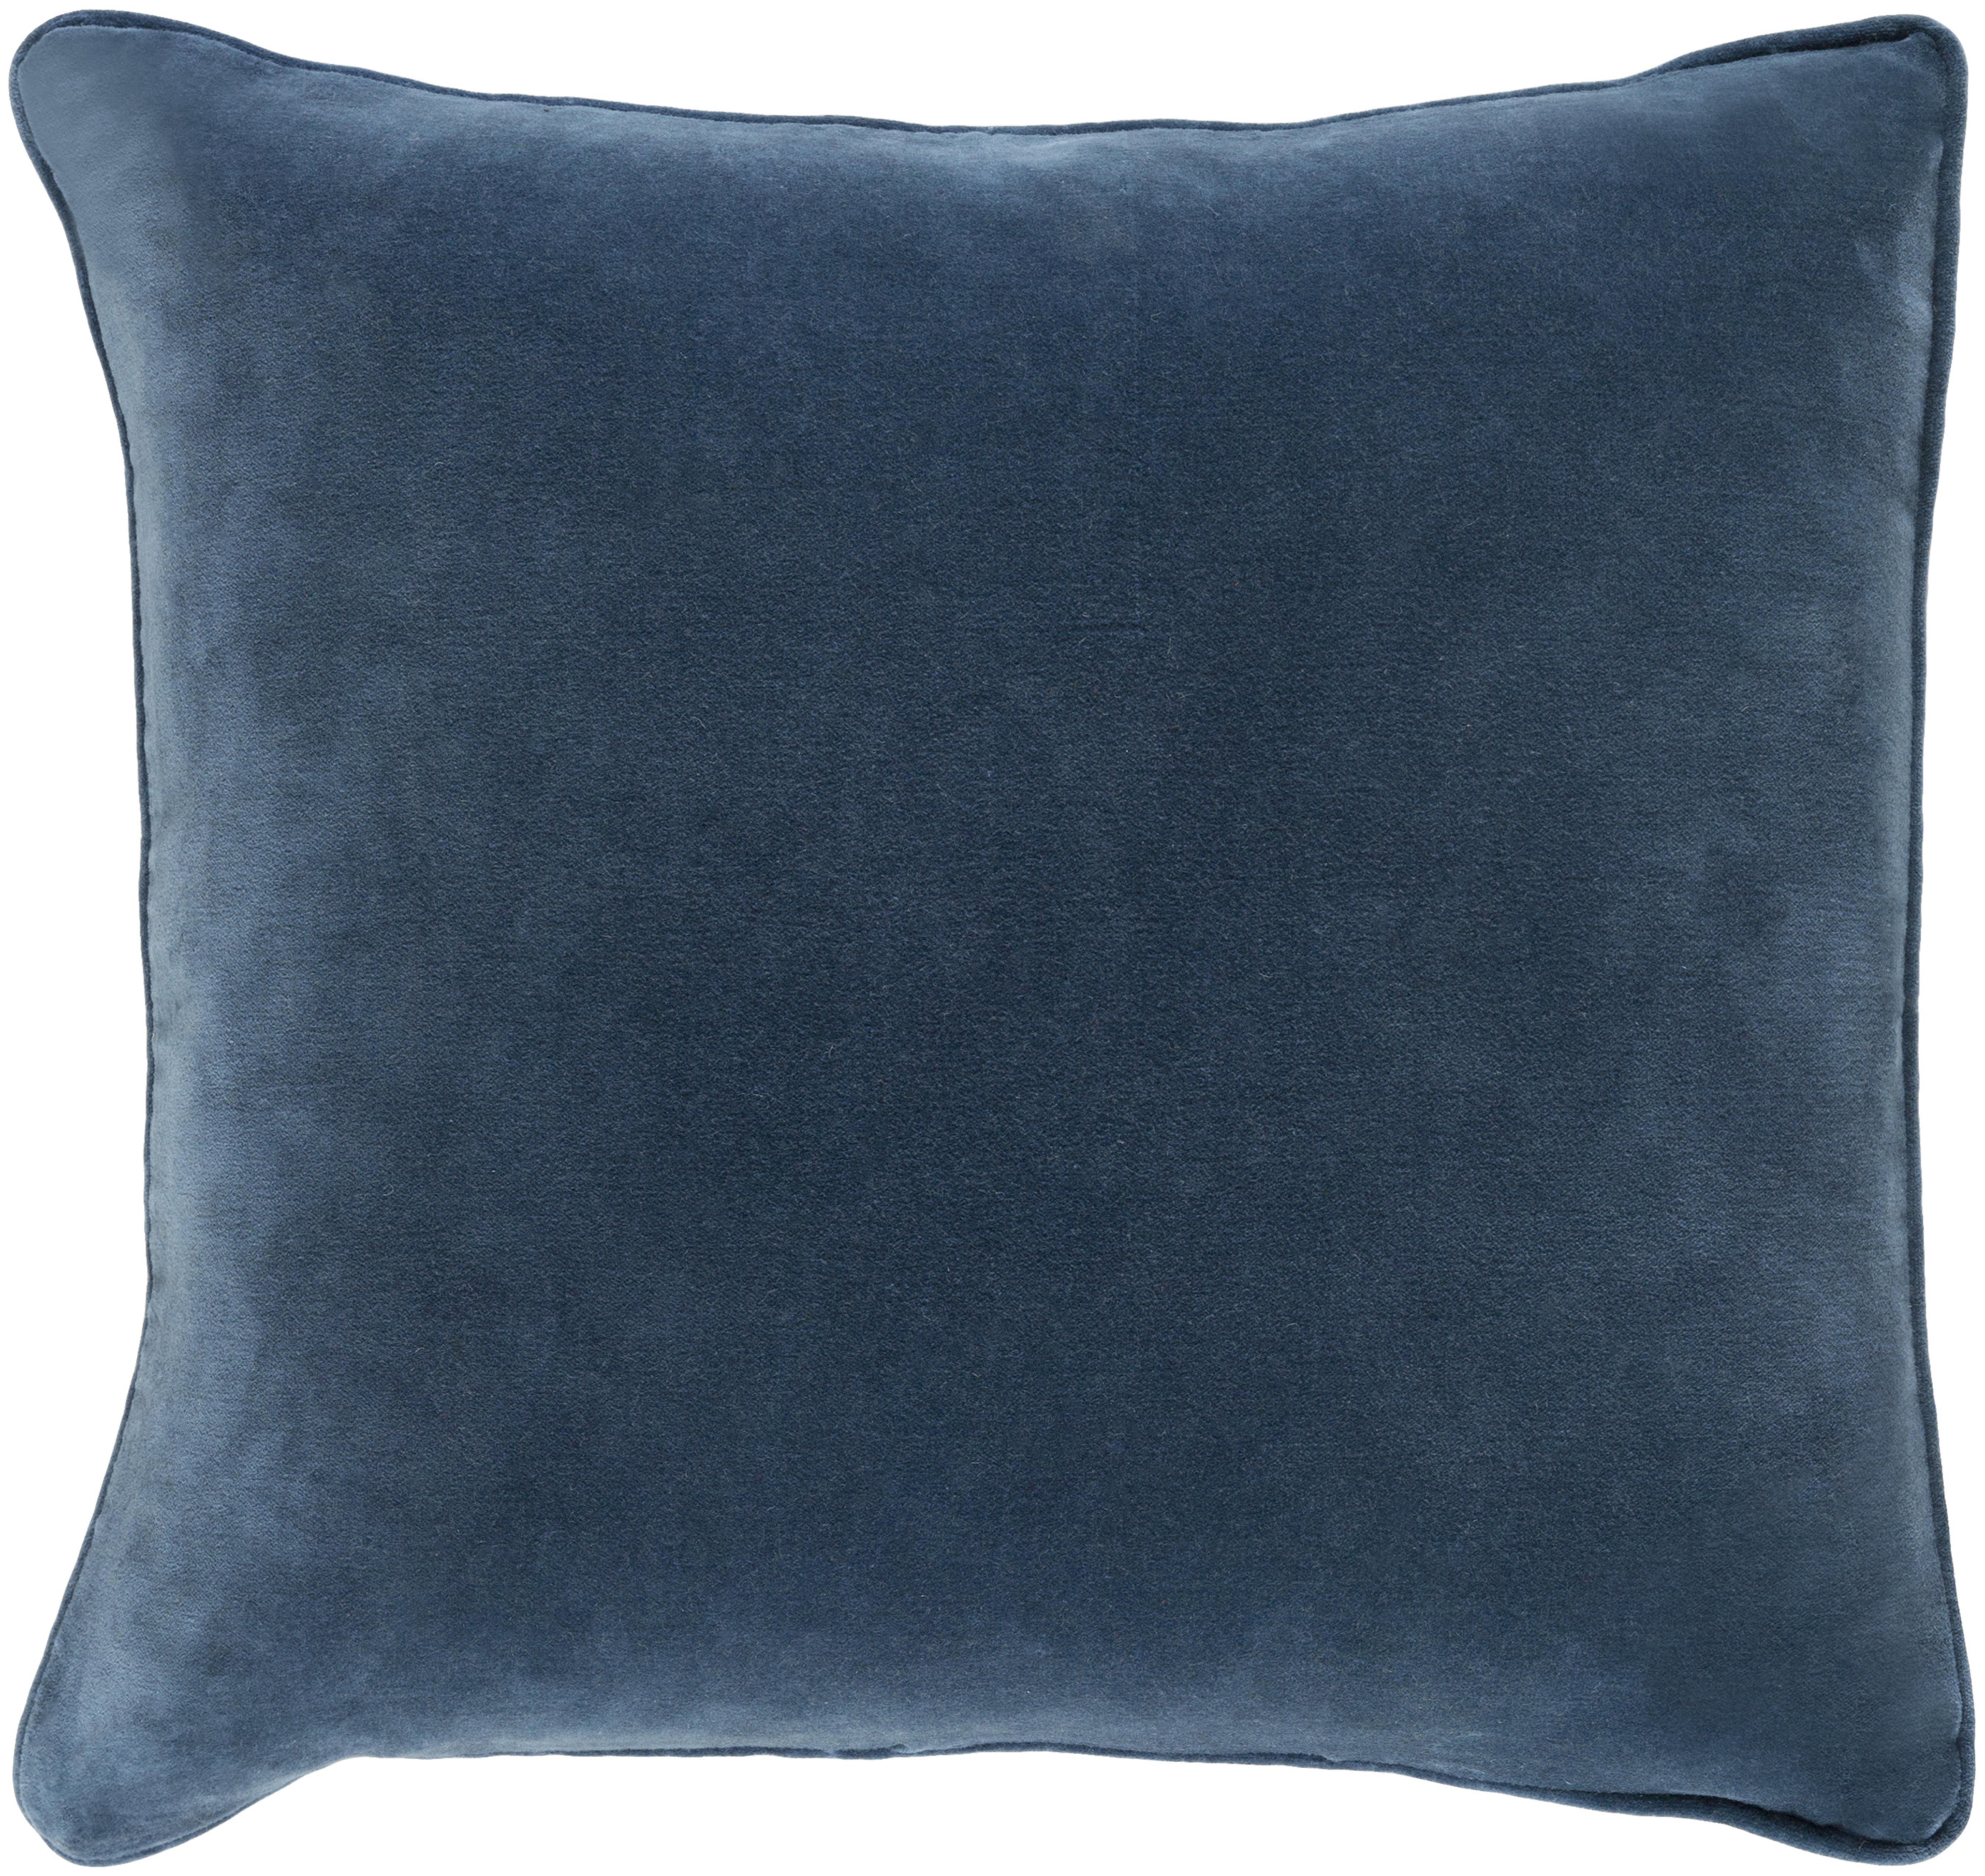 Safflower Pillow, 22" x 22", Teal - Surya